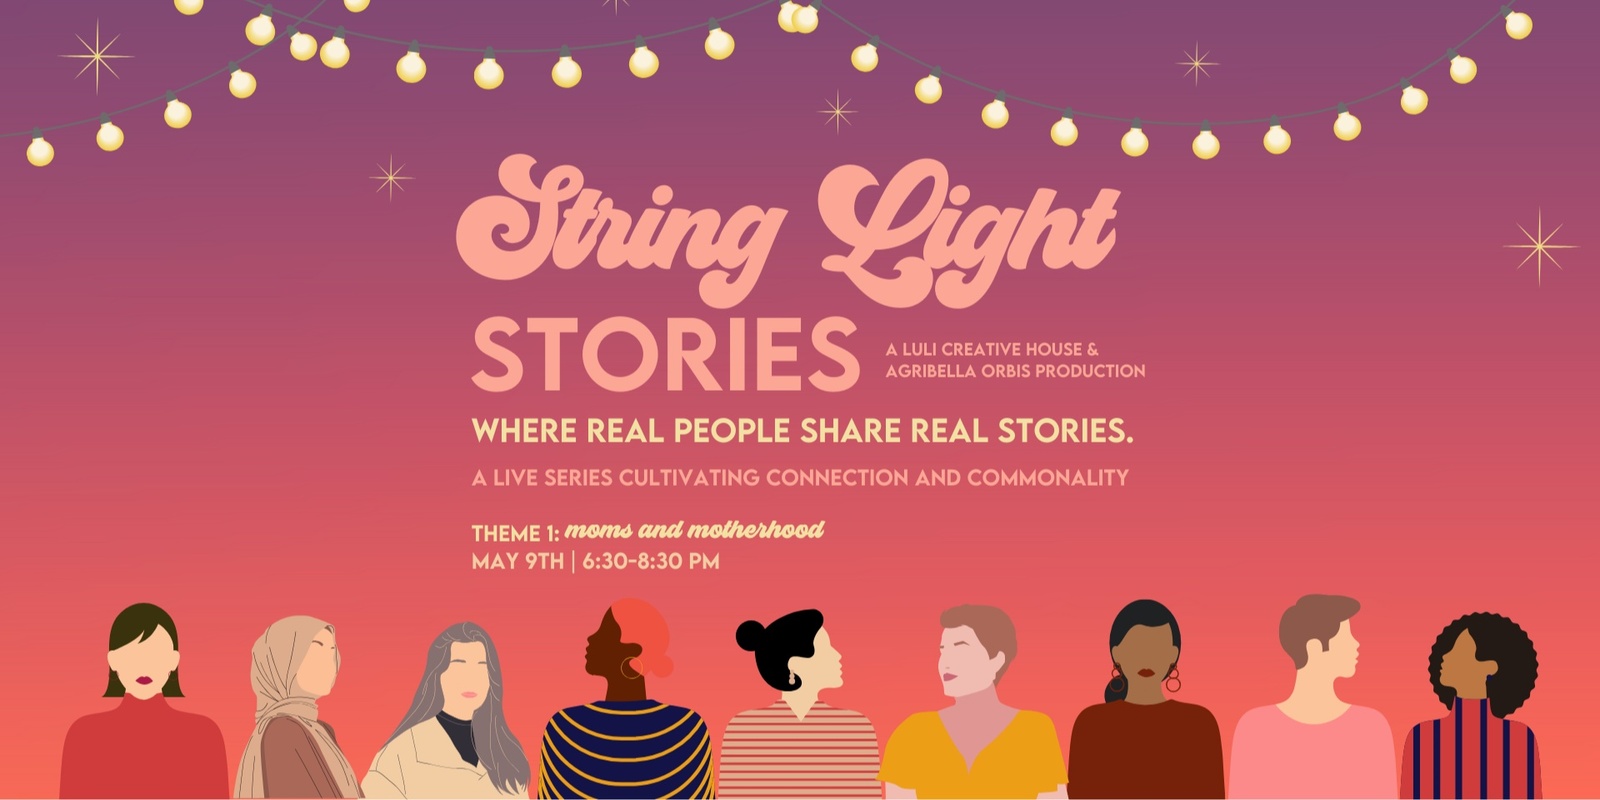 Banner image for String Light Stories